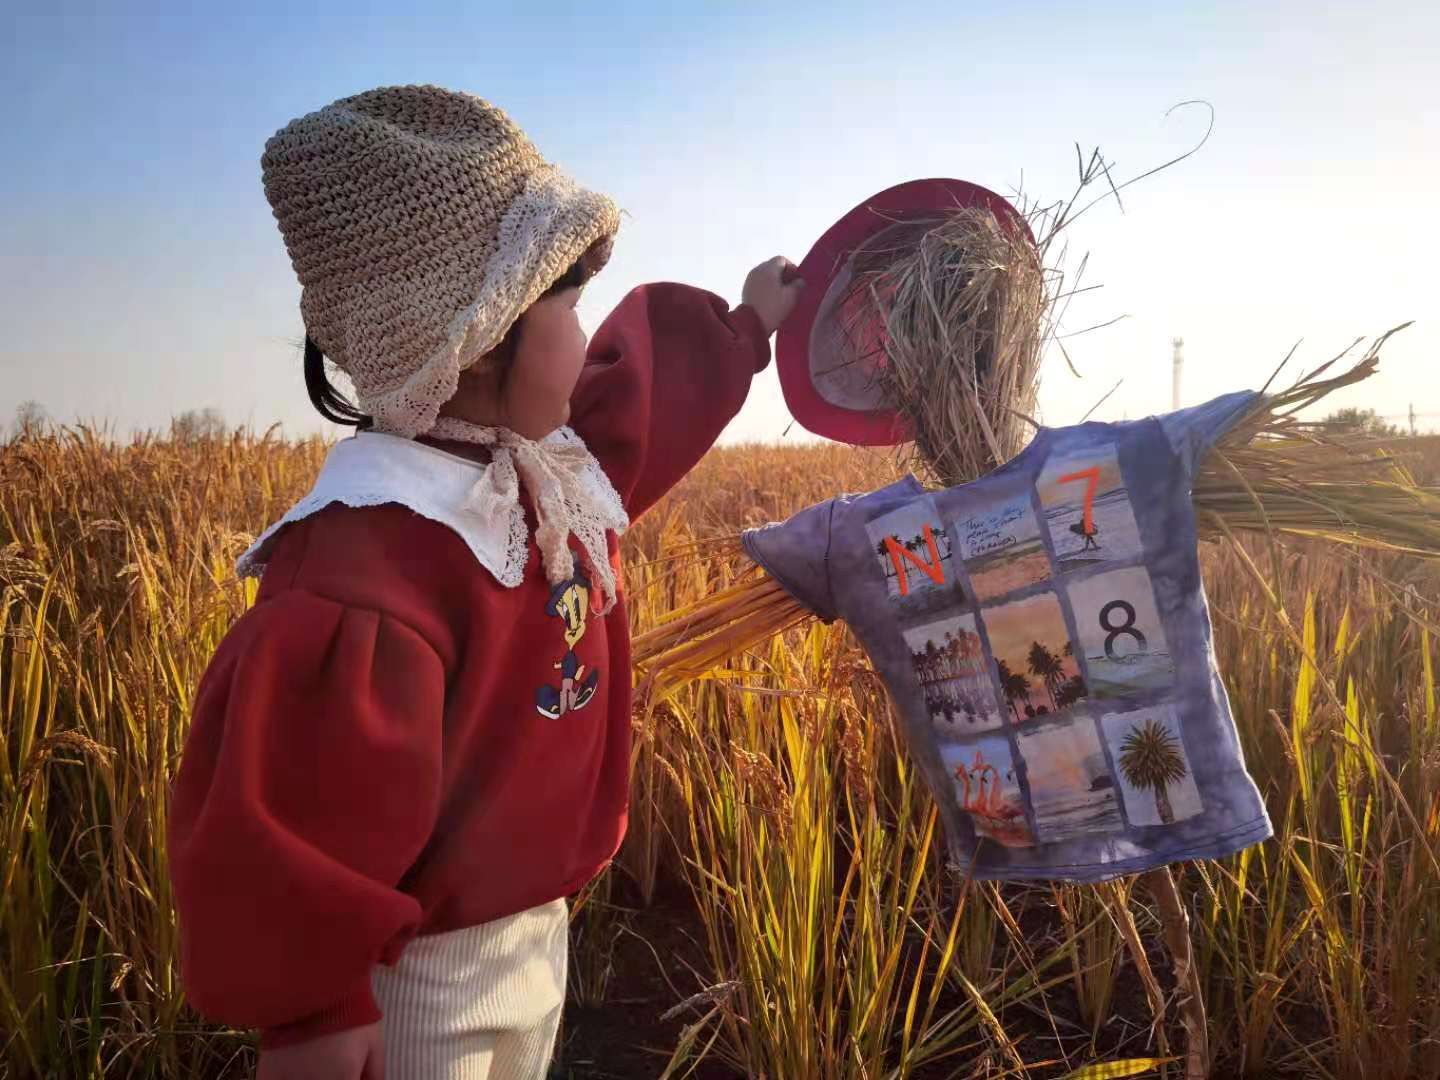 尼泊尔儿童 稻田 尼泊尔 - Pixabay上的免费照片 - Pixabay